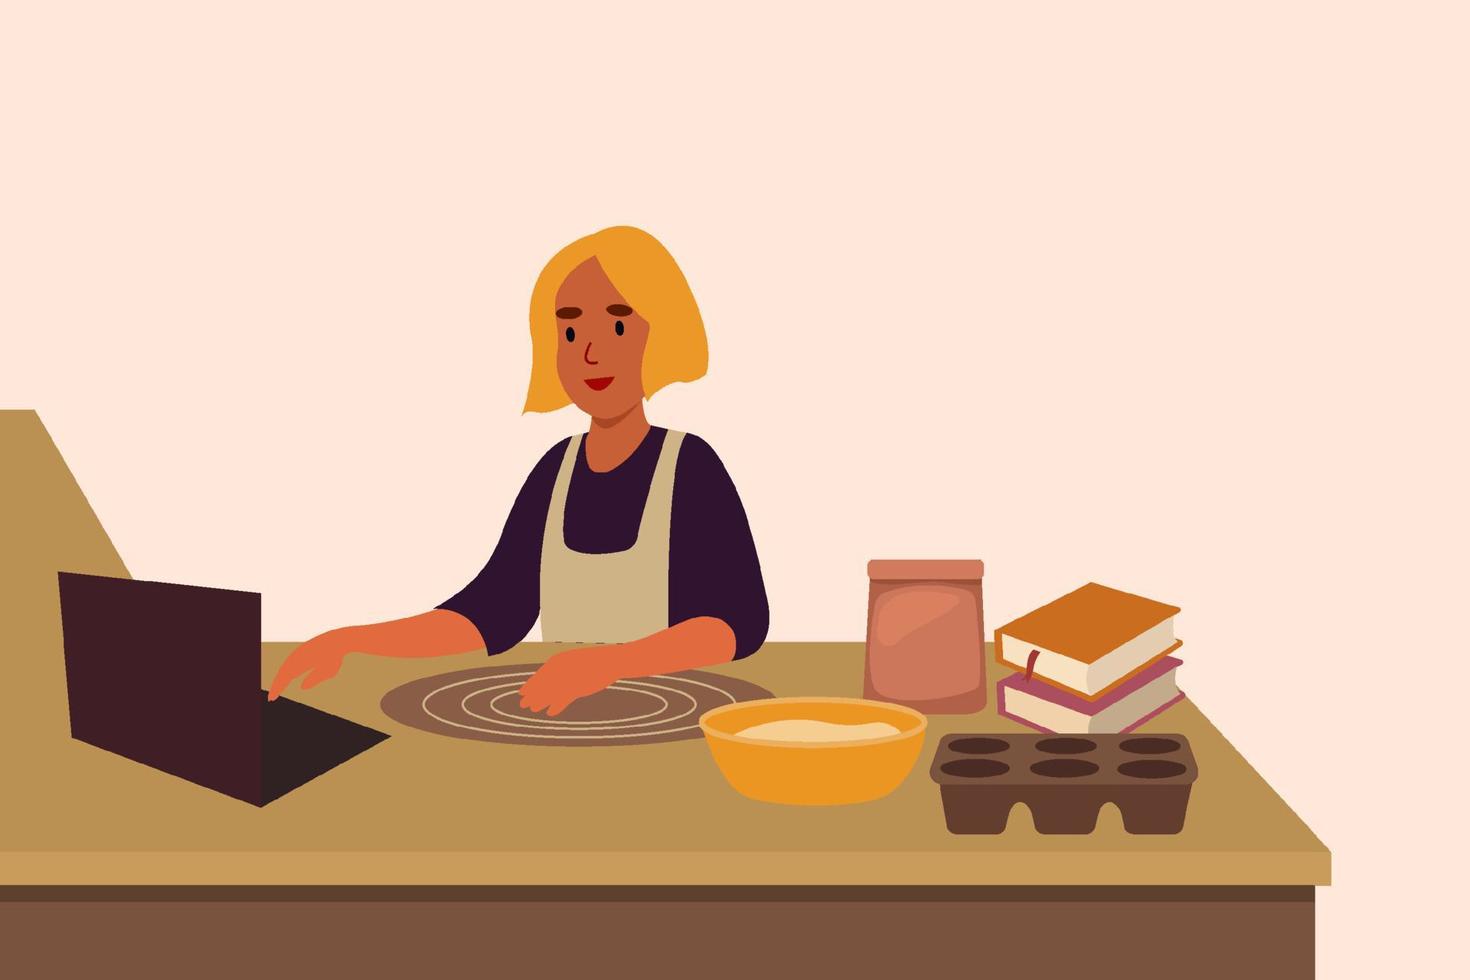 la giovane donna impara a cucinare il cibo attraverso una lezione online tramite laptop. illustrazione piatta vettoriale. illustrazione per la progettazione di corsi online, copertine di ricettari. vettore